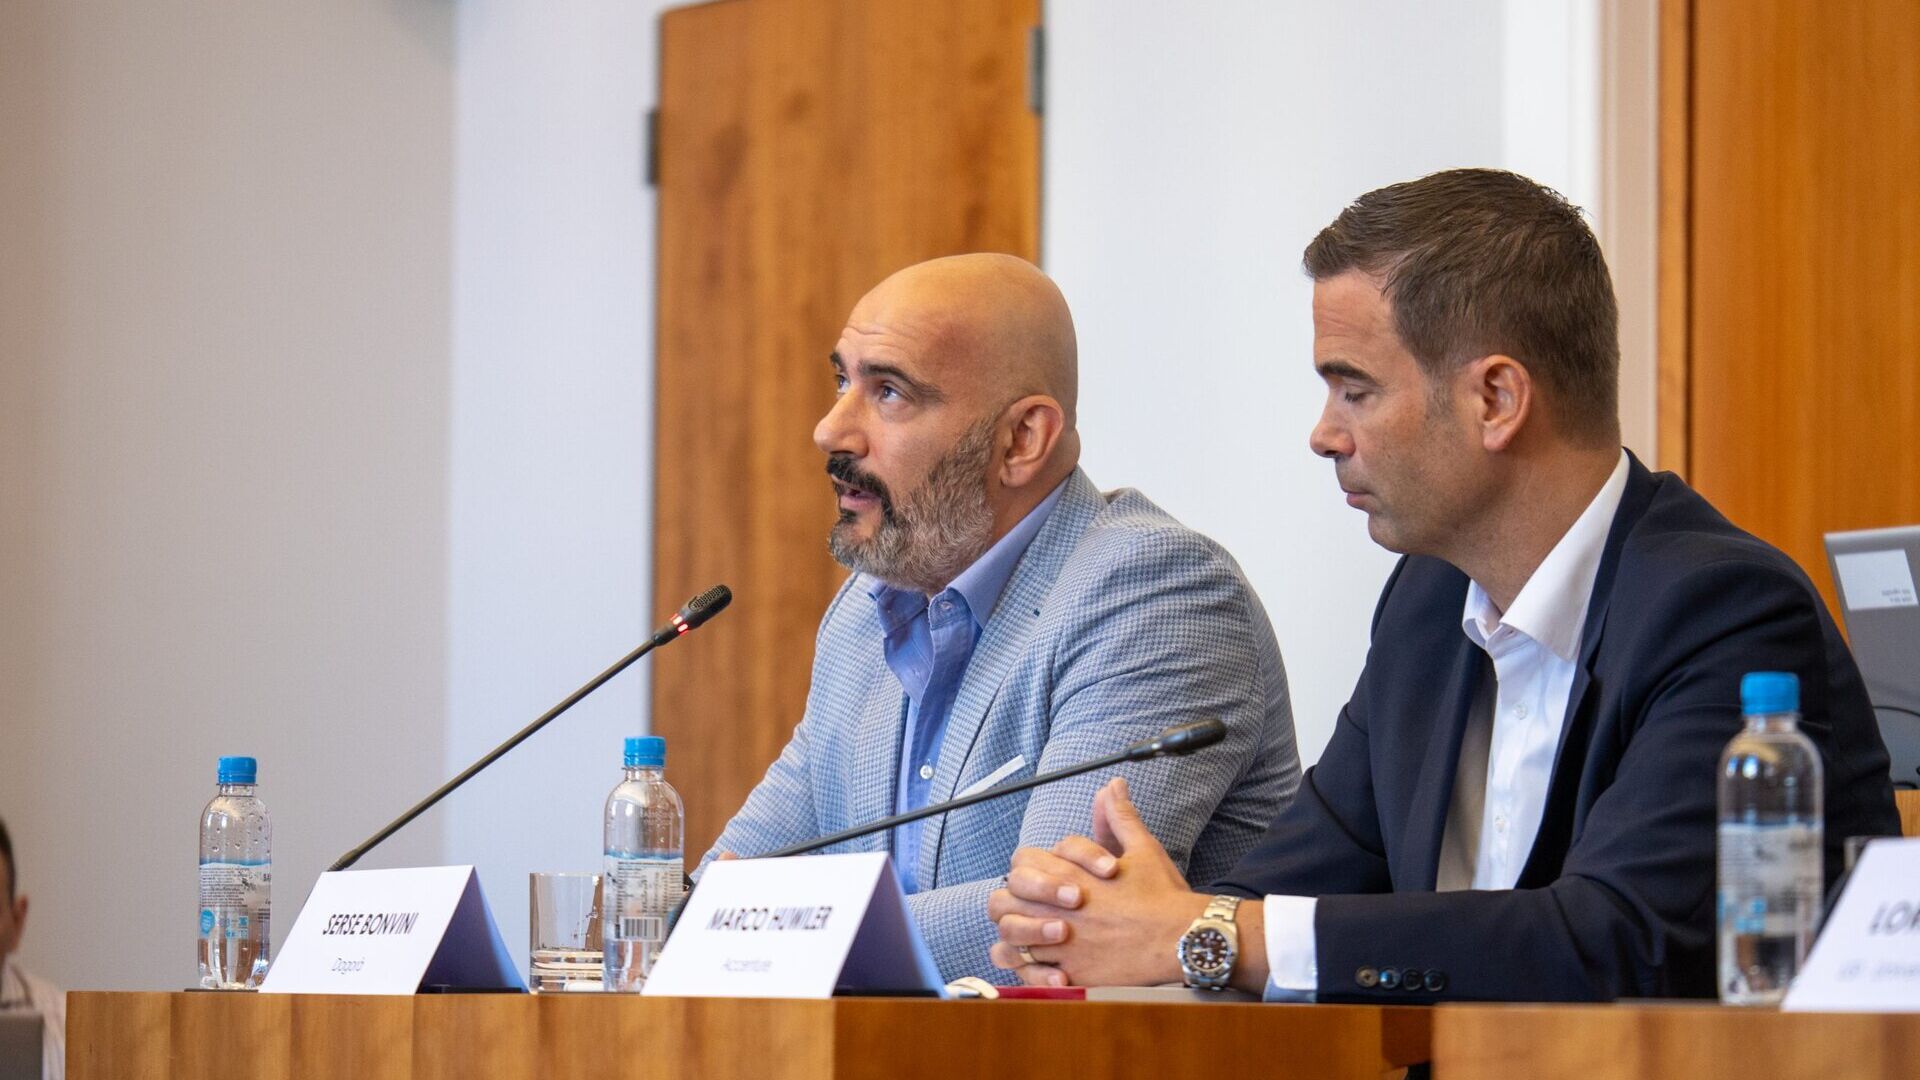 LTCC: Serse Bonvini, administrerende direktør i Dagorà Lifestyle Innovation Hub, og Marco Huwiler, landssjef i Accenture Switzerland